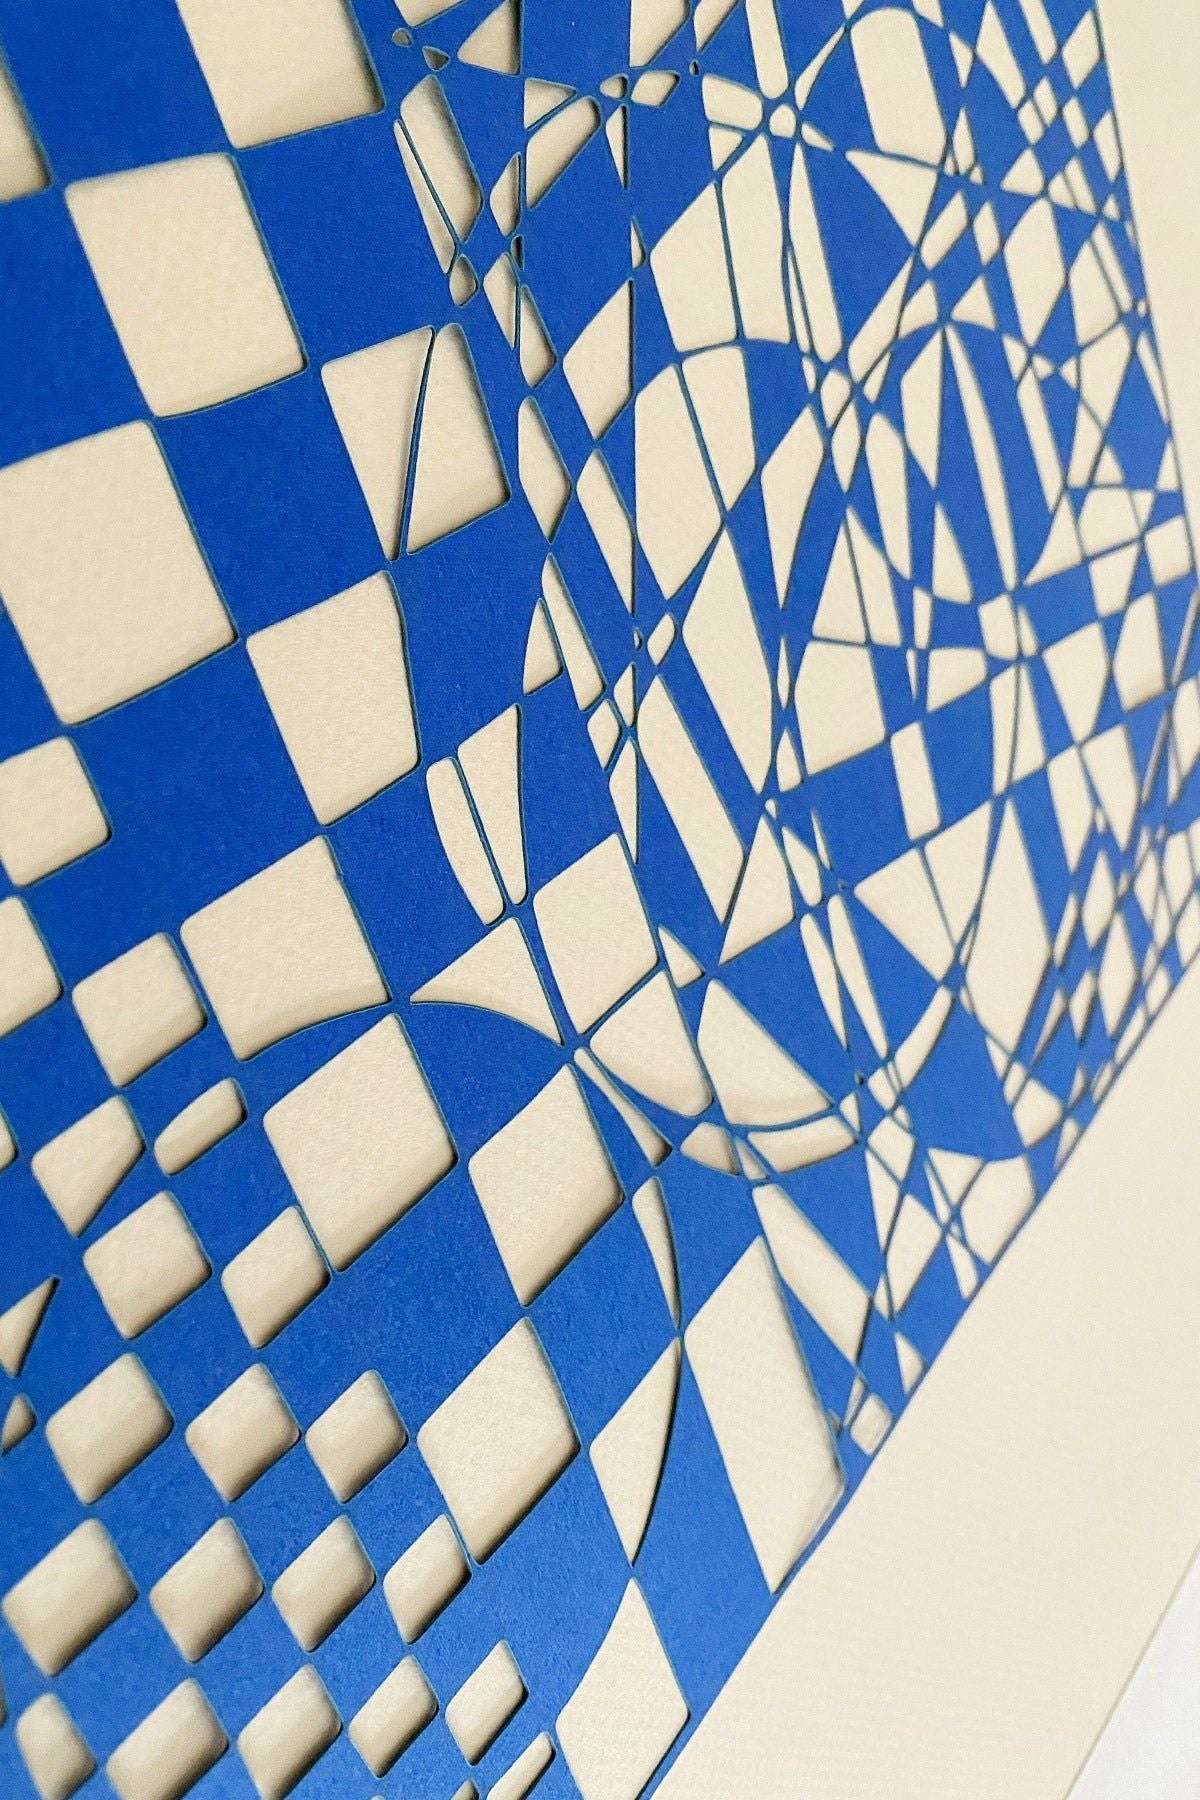 Studio over PaperCut A4 geometrische rechthoek, blauw